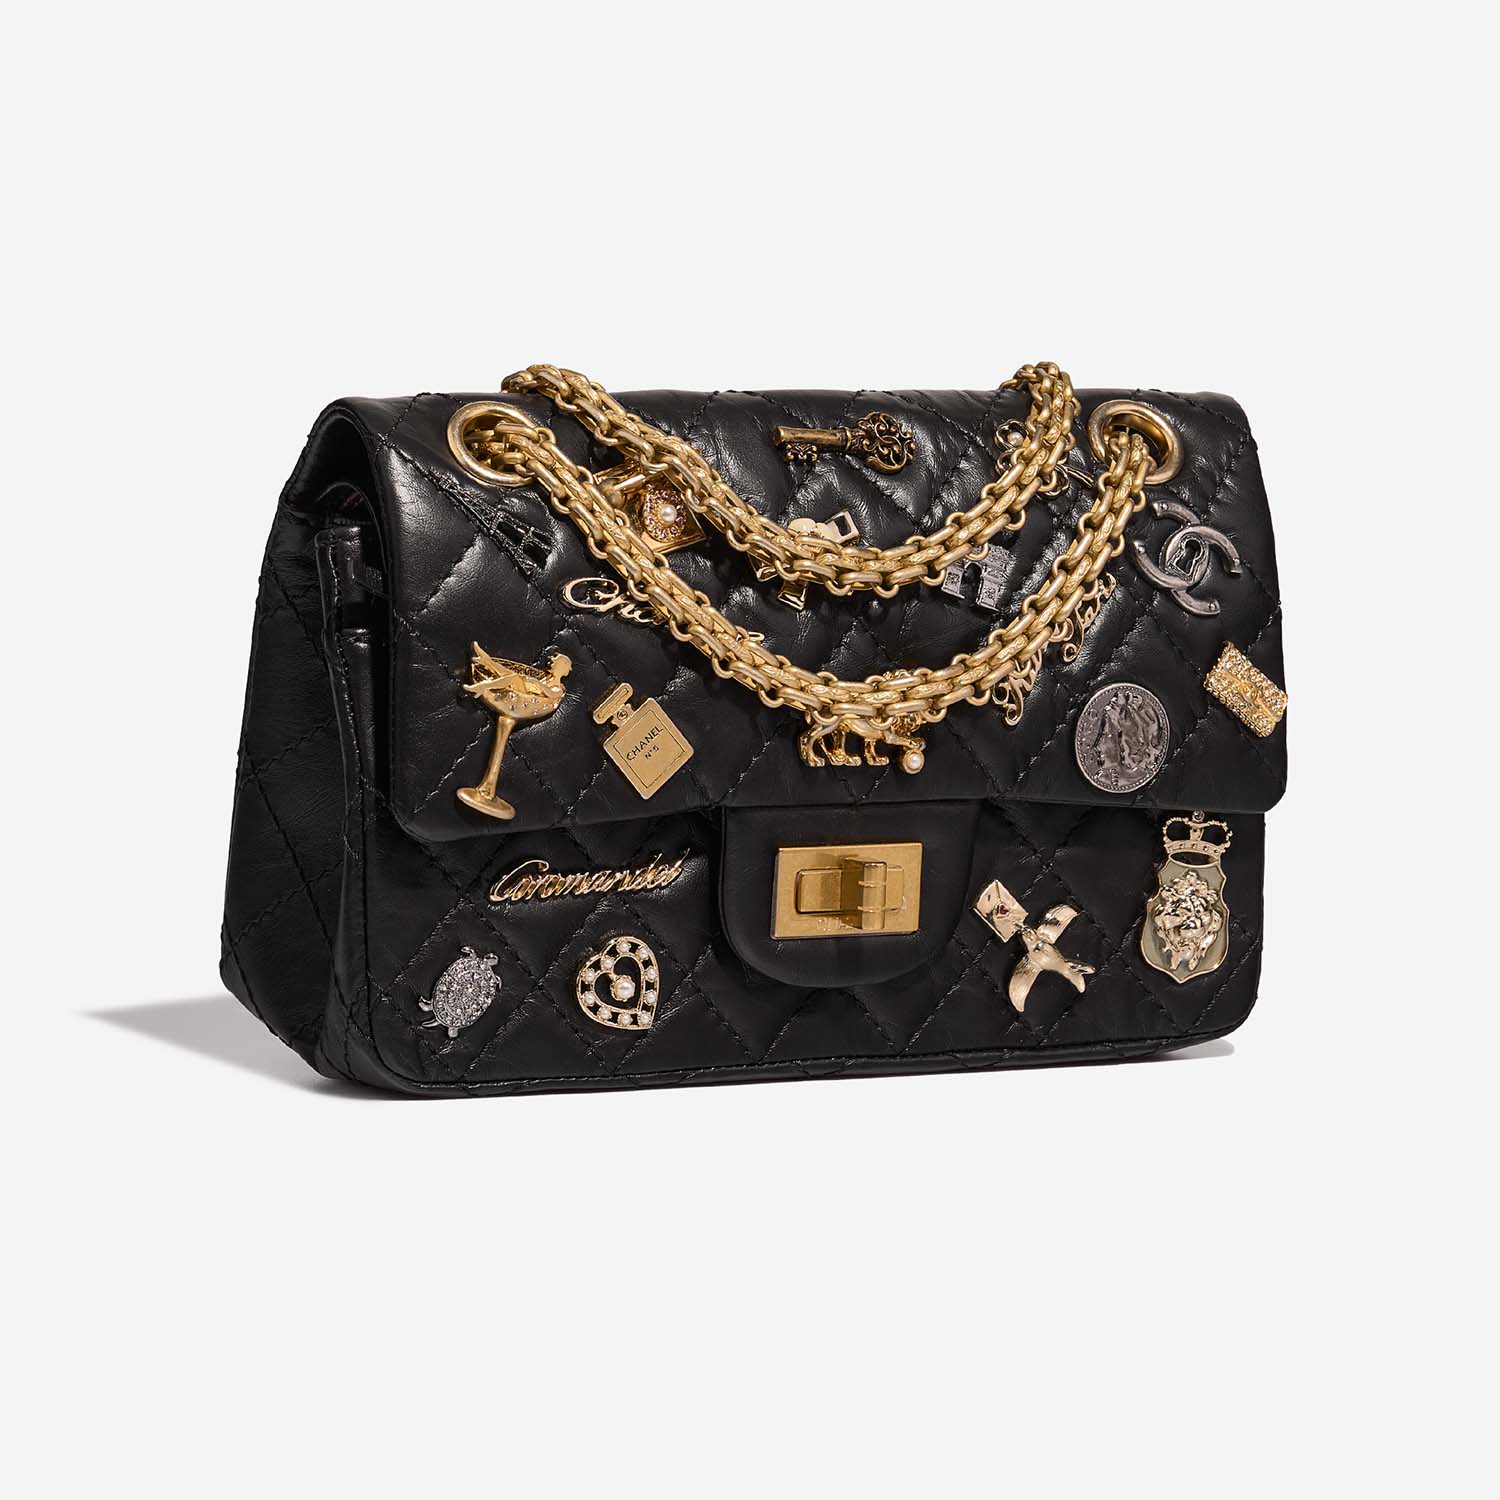 Chanel 255 225 Schwarz Side Front | Verkaufen Sie Ihre Designer-Tasche auf Saclab.com